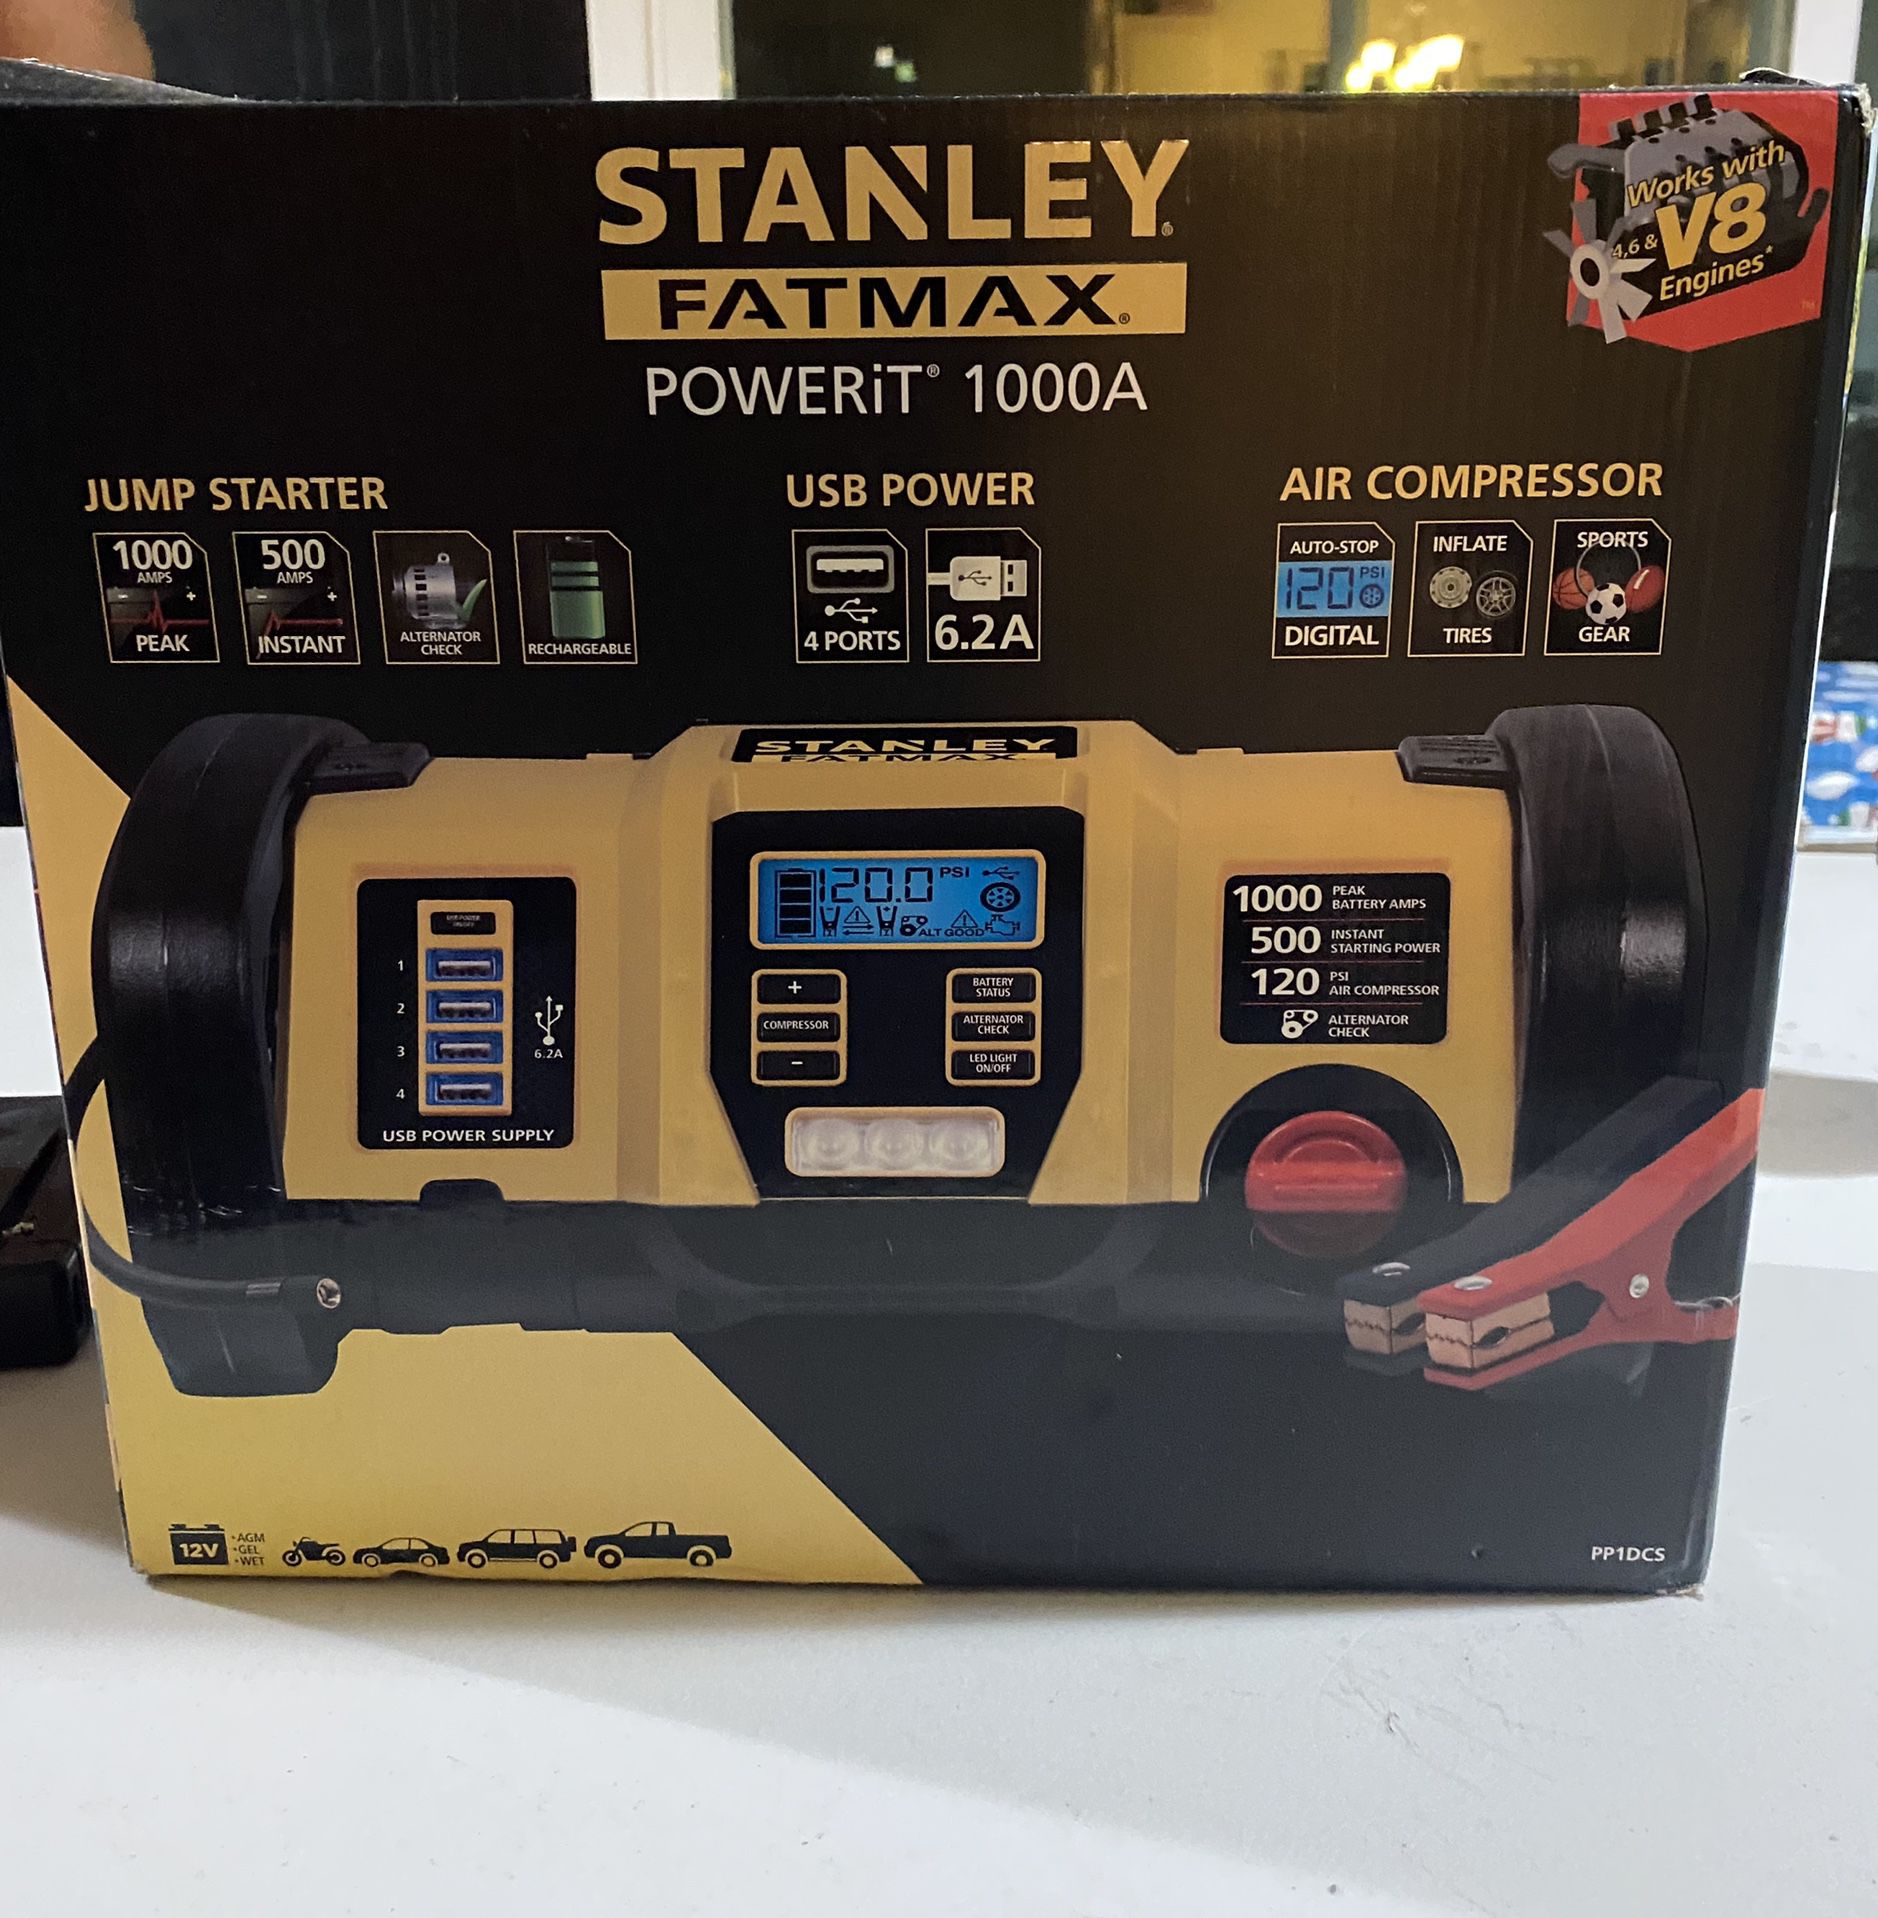 Stanley Power it 1000A